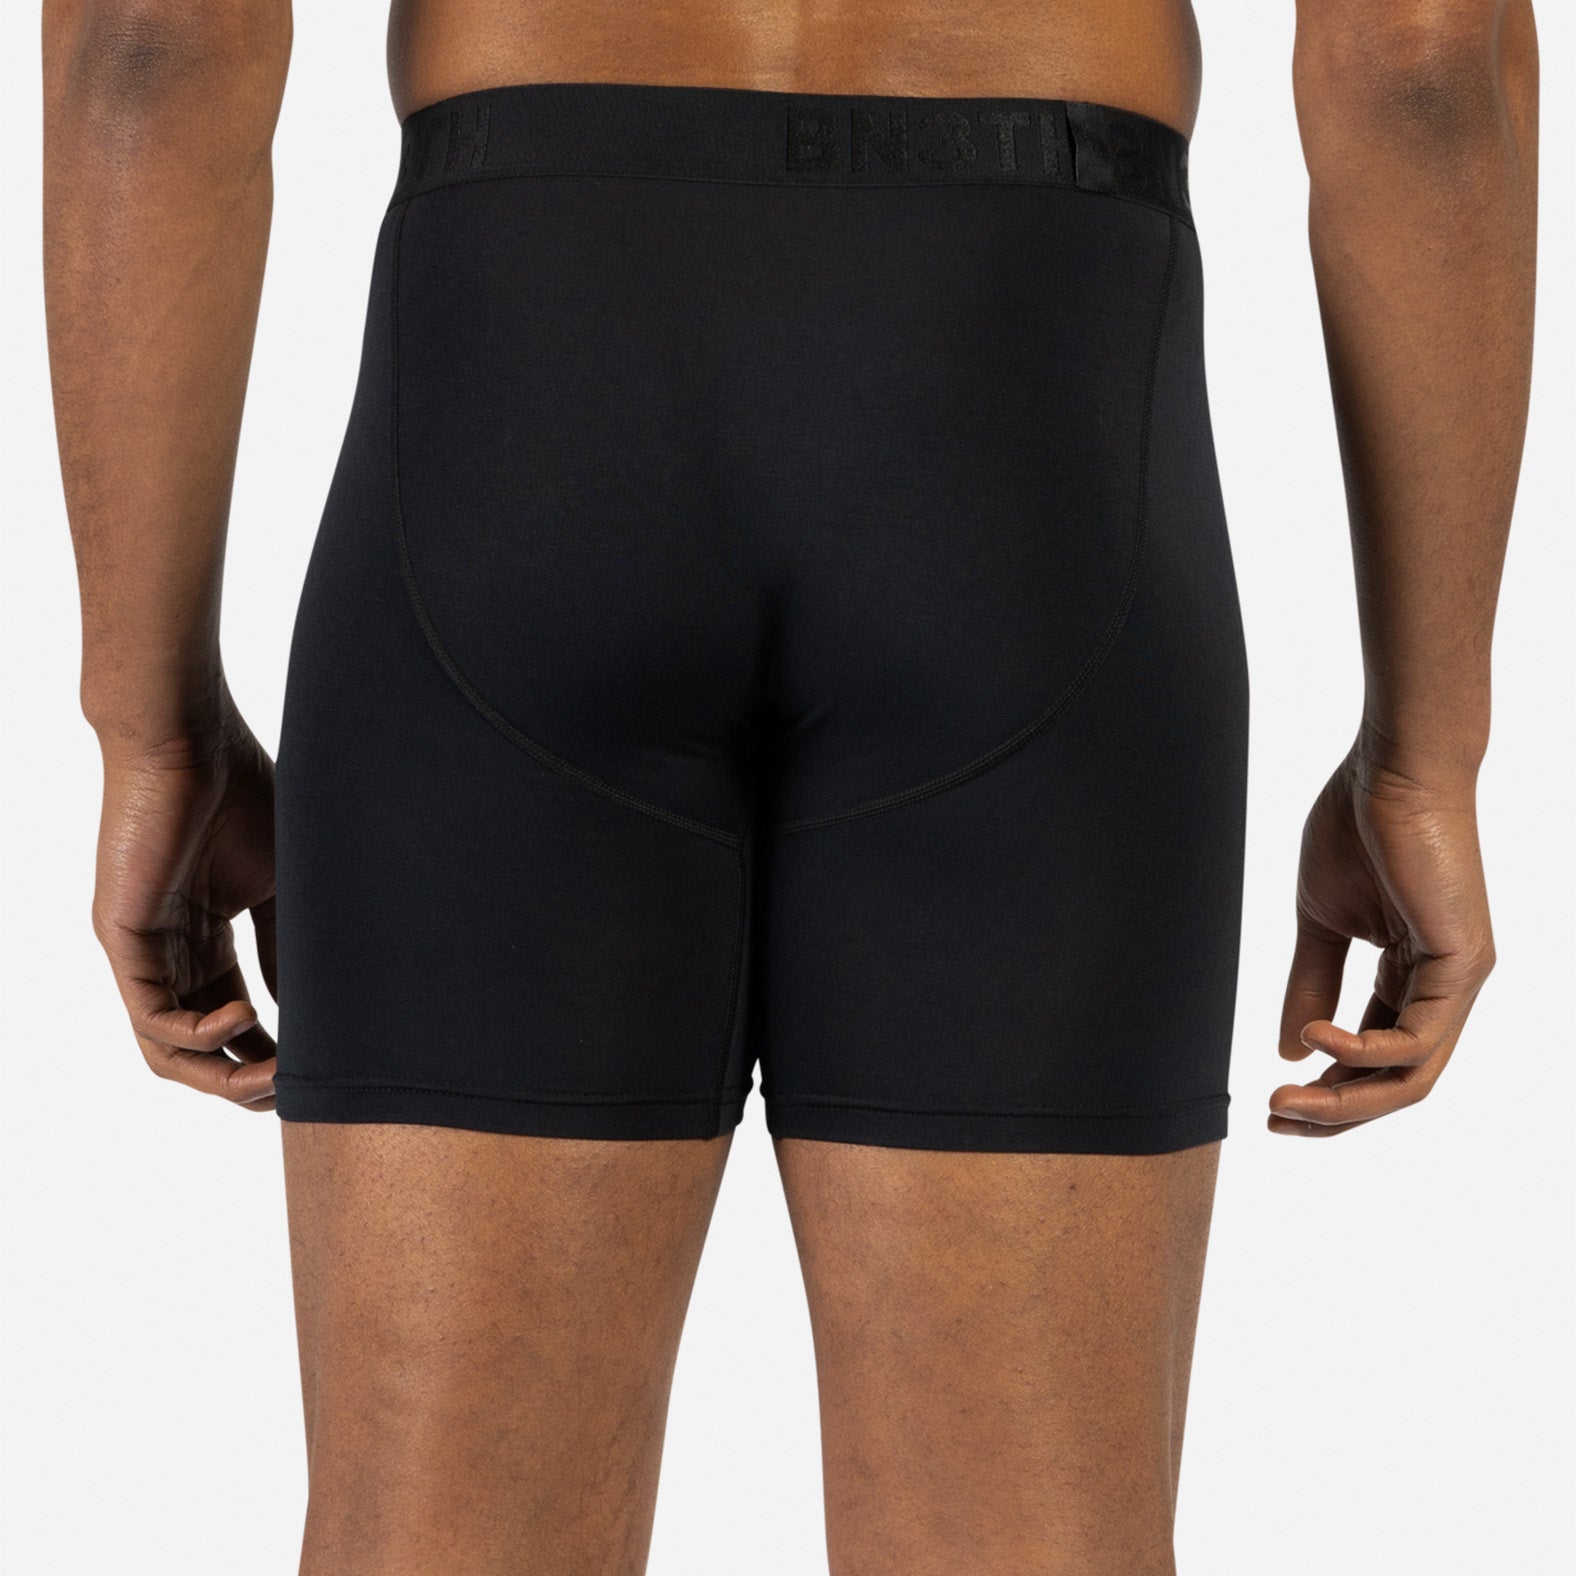 Layer 8 Solid Boxer Brief Underwear - 3-Pack - Men's - Men